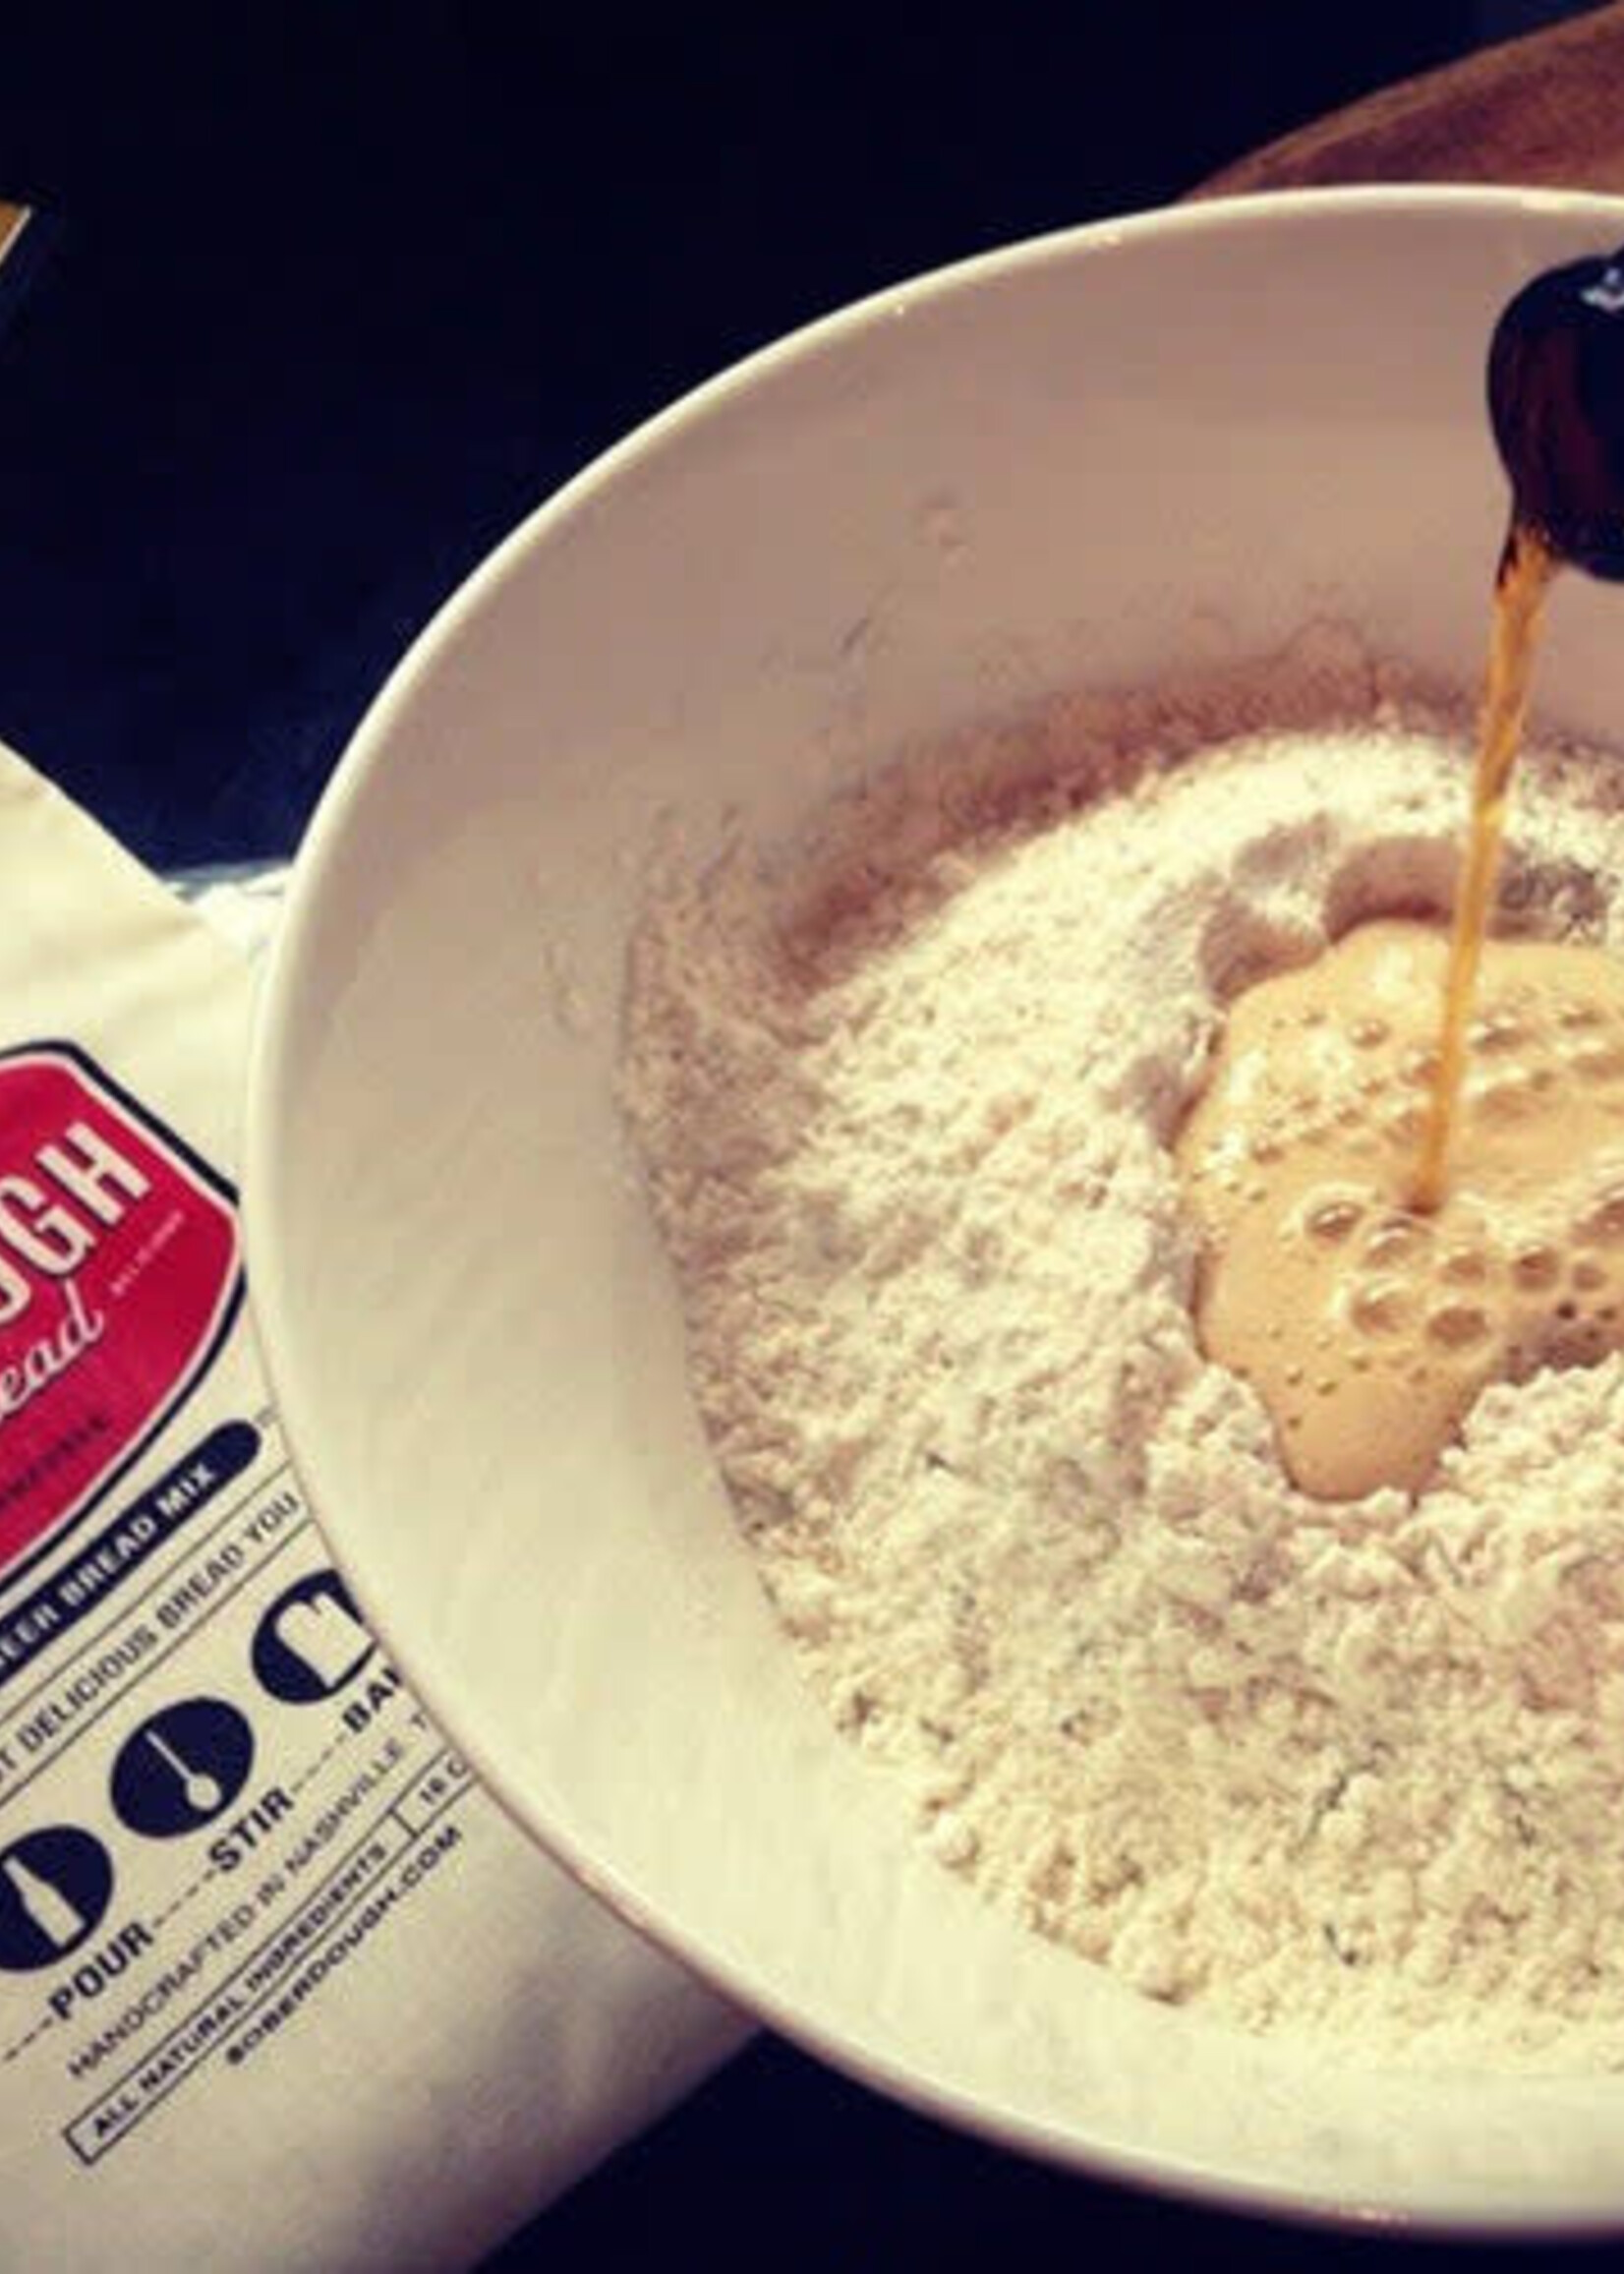 Soberdough Bread Mix : Cinnamon Swirl